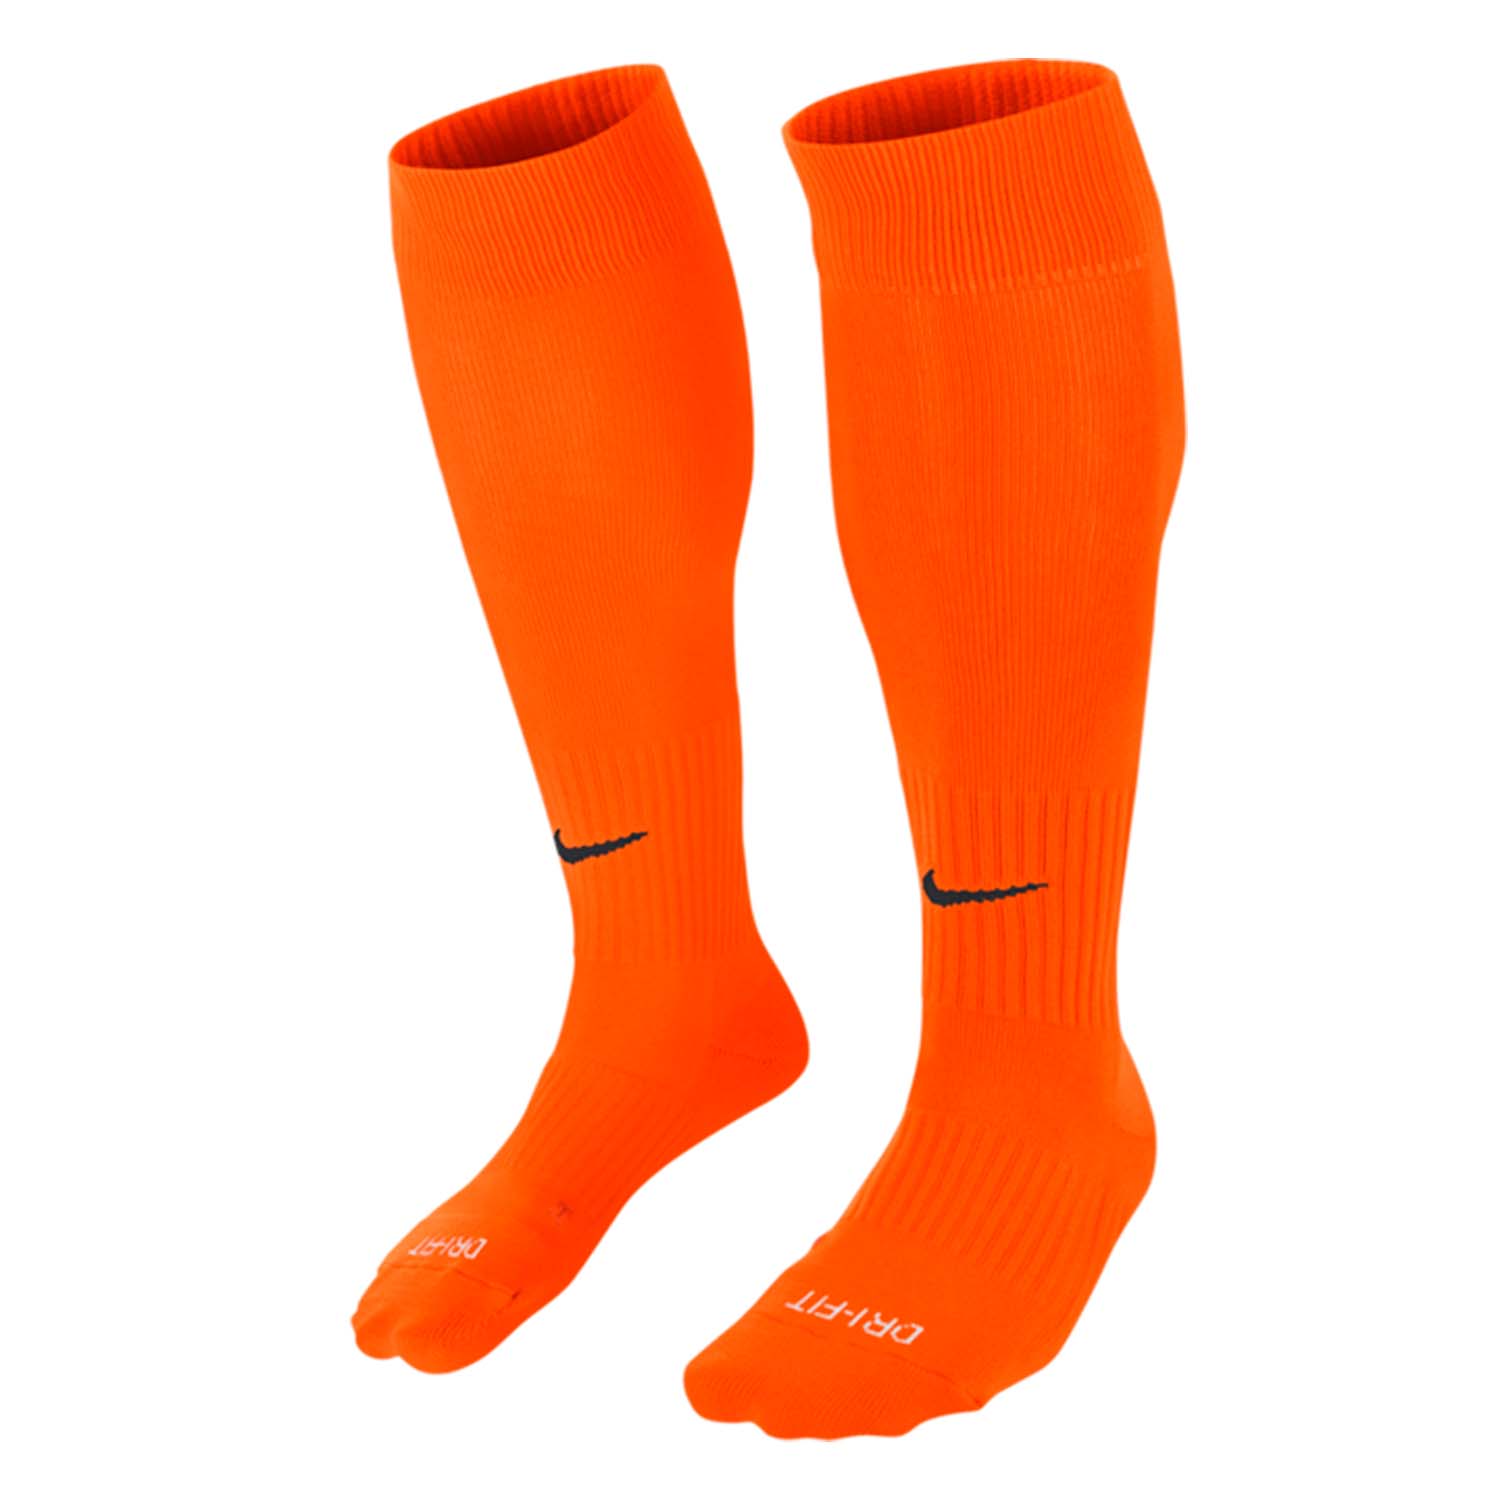 Oranssit Niken jalkapallosukat. Jalkapallosukkien Dri-FIT materiaali auttaa pitämään jalkasi kuivana. 